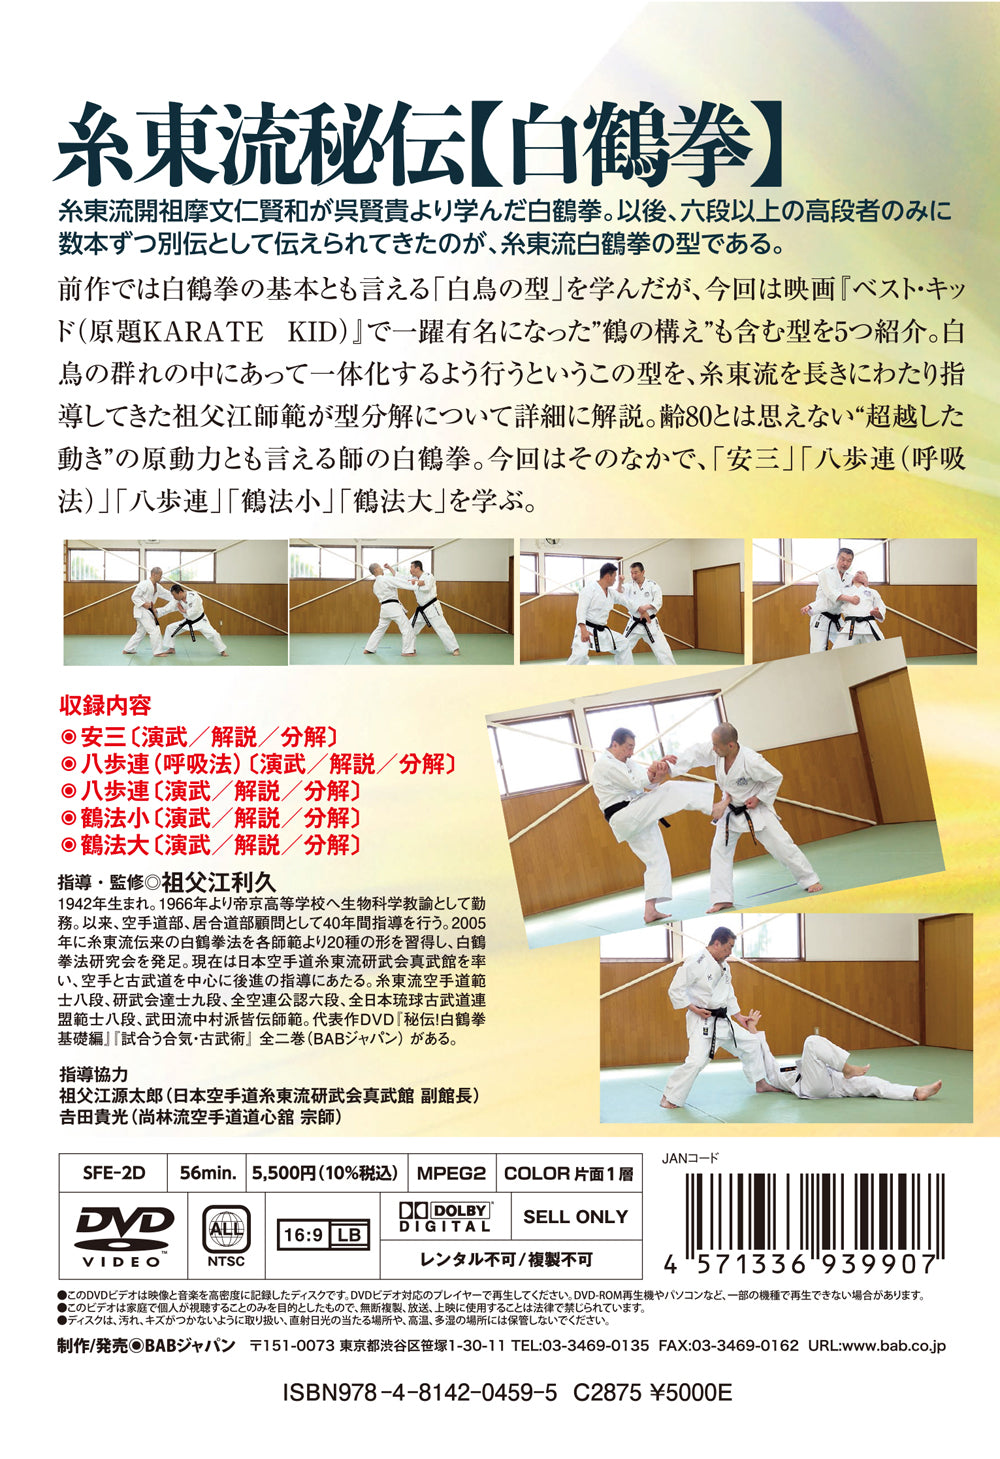 Hakutsuru Ken (Grulla Blanca) DVD 2: El camino de Shito Ryu por Sofue Toshihisa